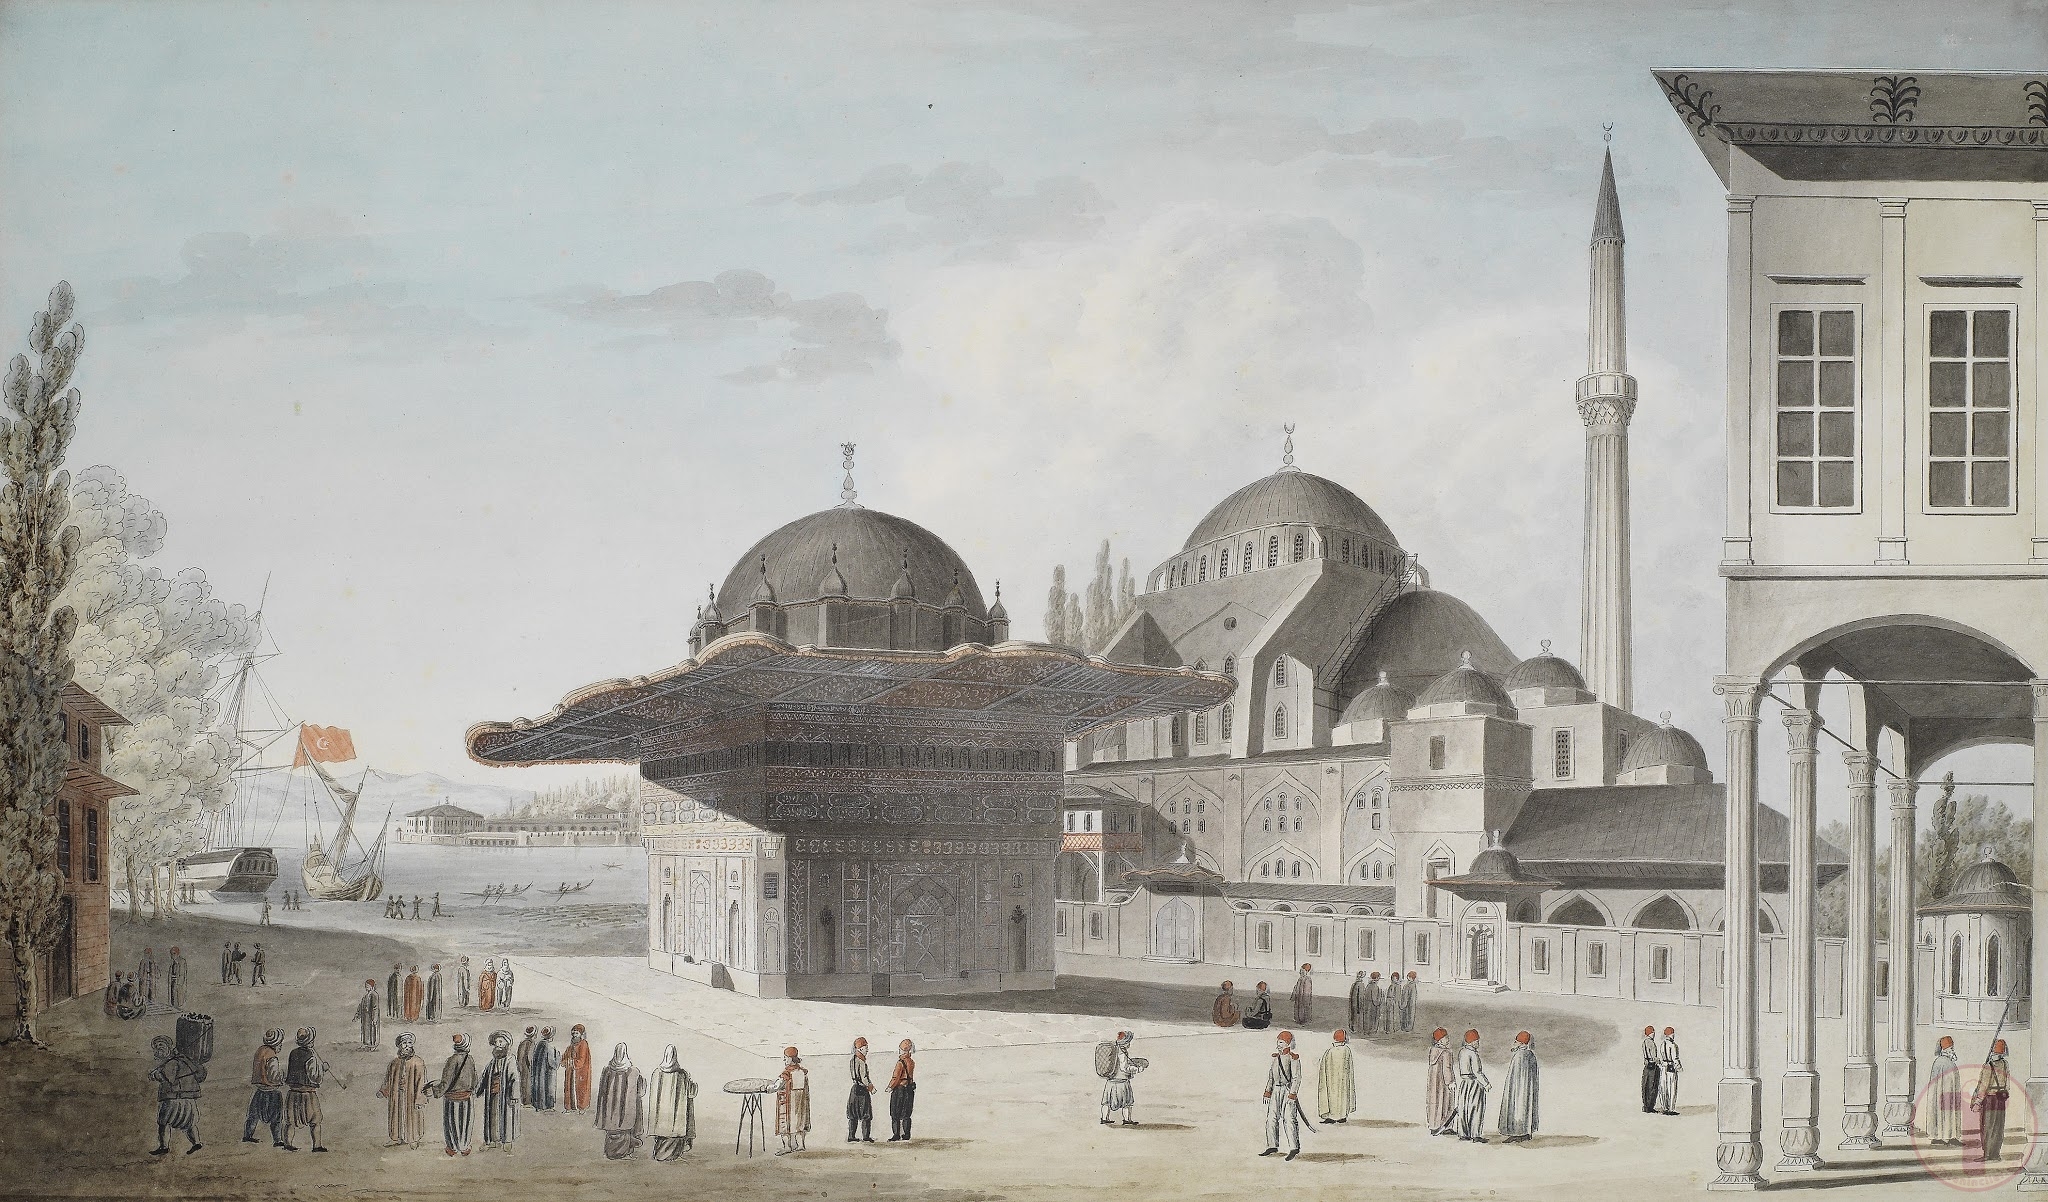 Osmanlı İstanbulu